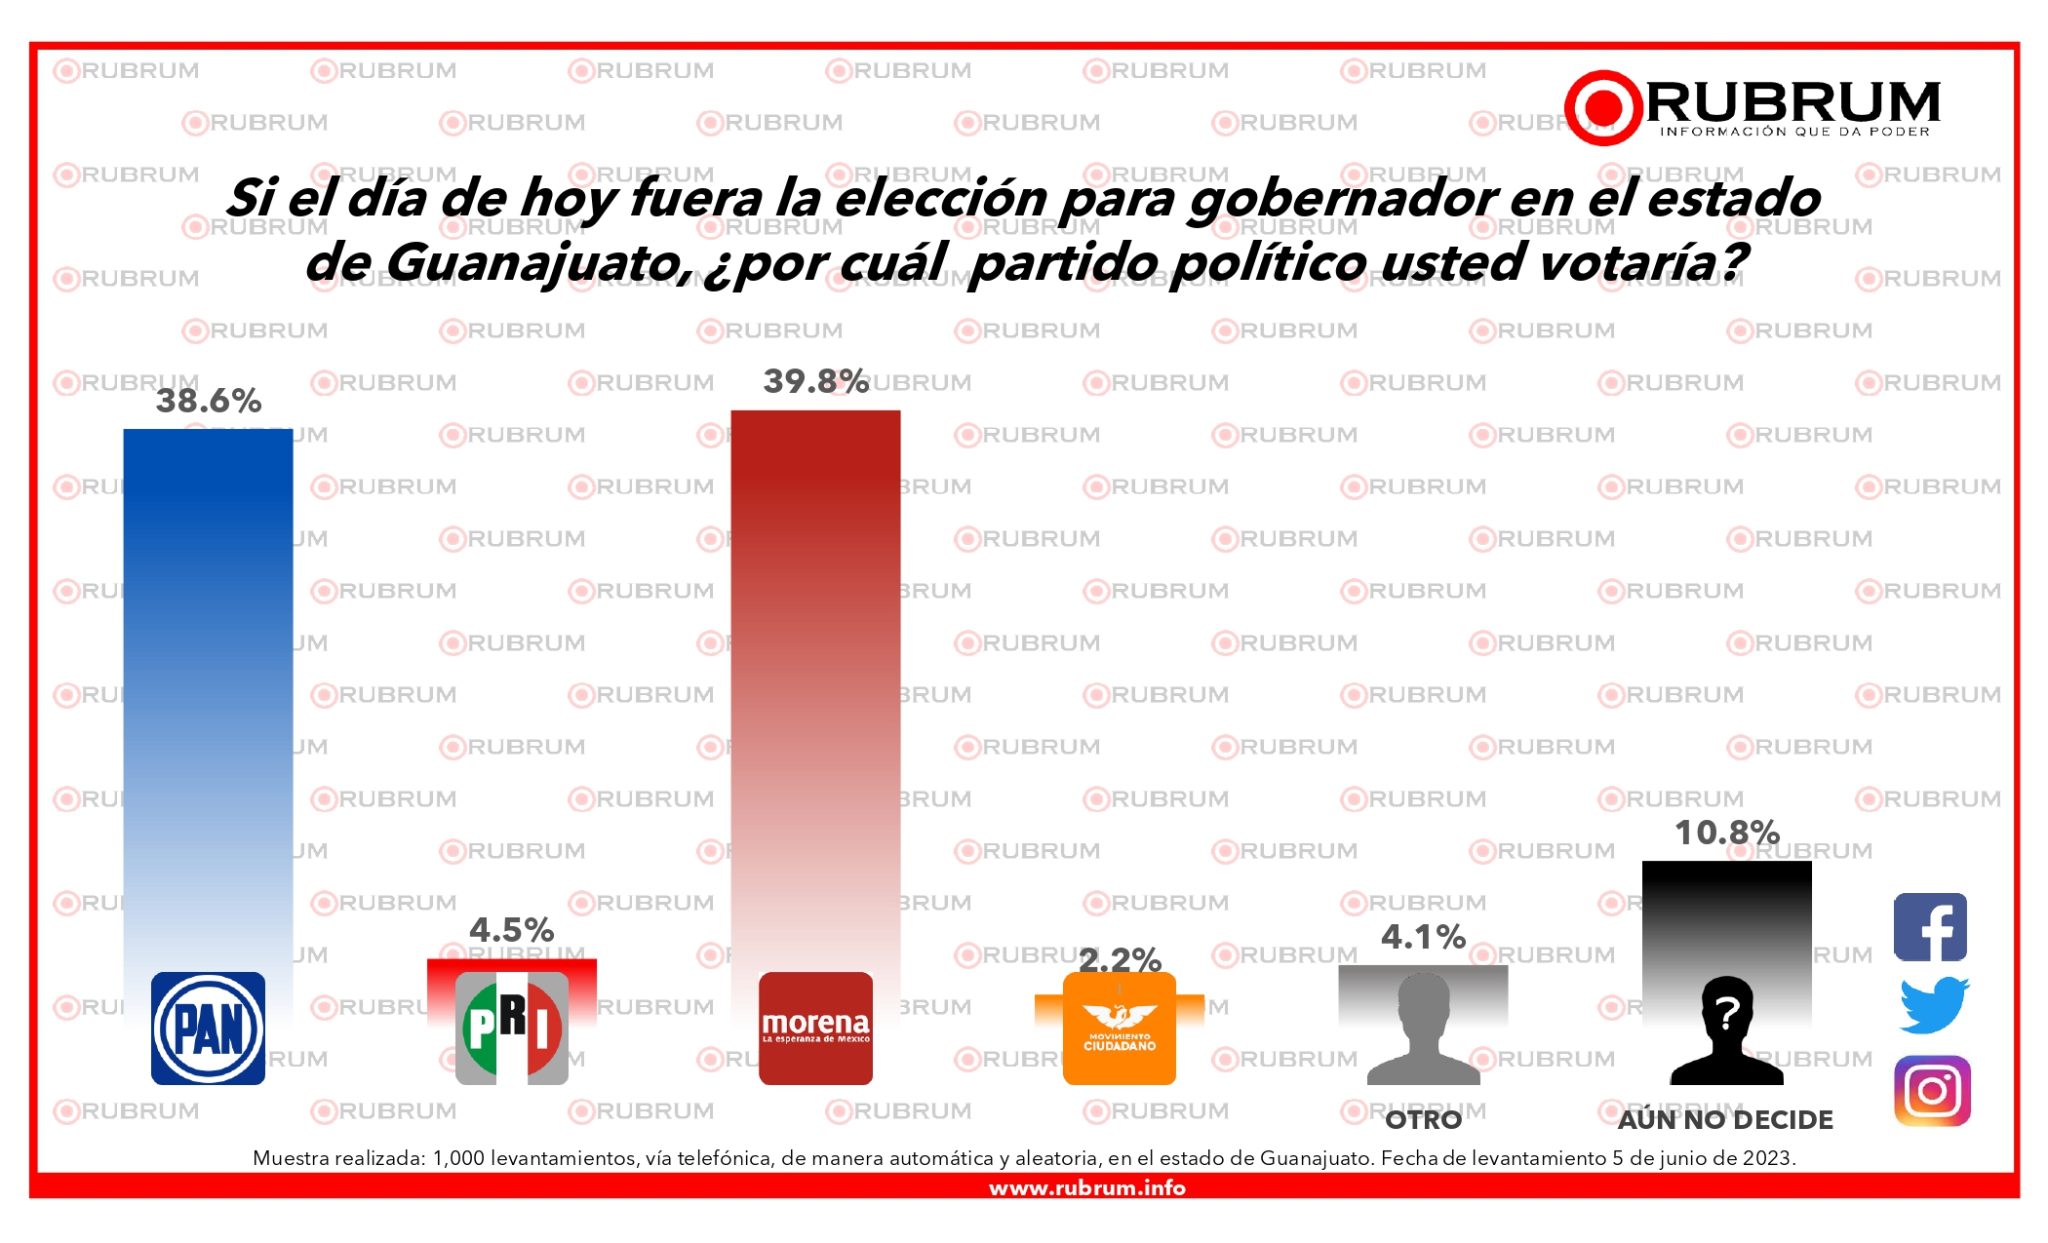 Encuestas Guanajuato de Rubrum, junio